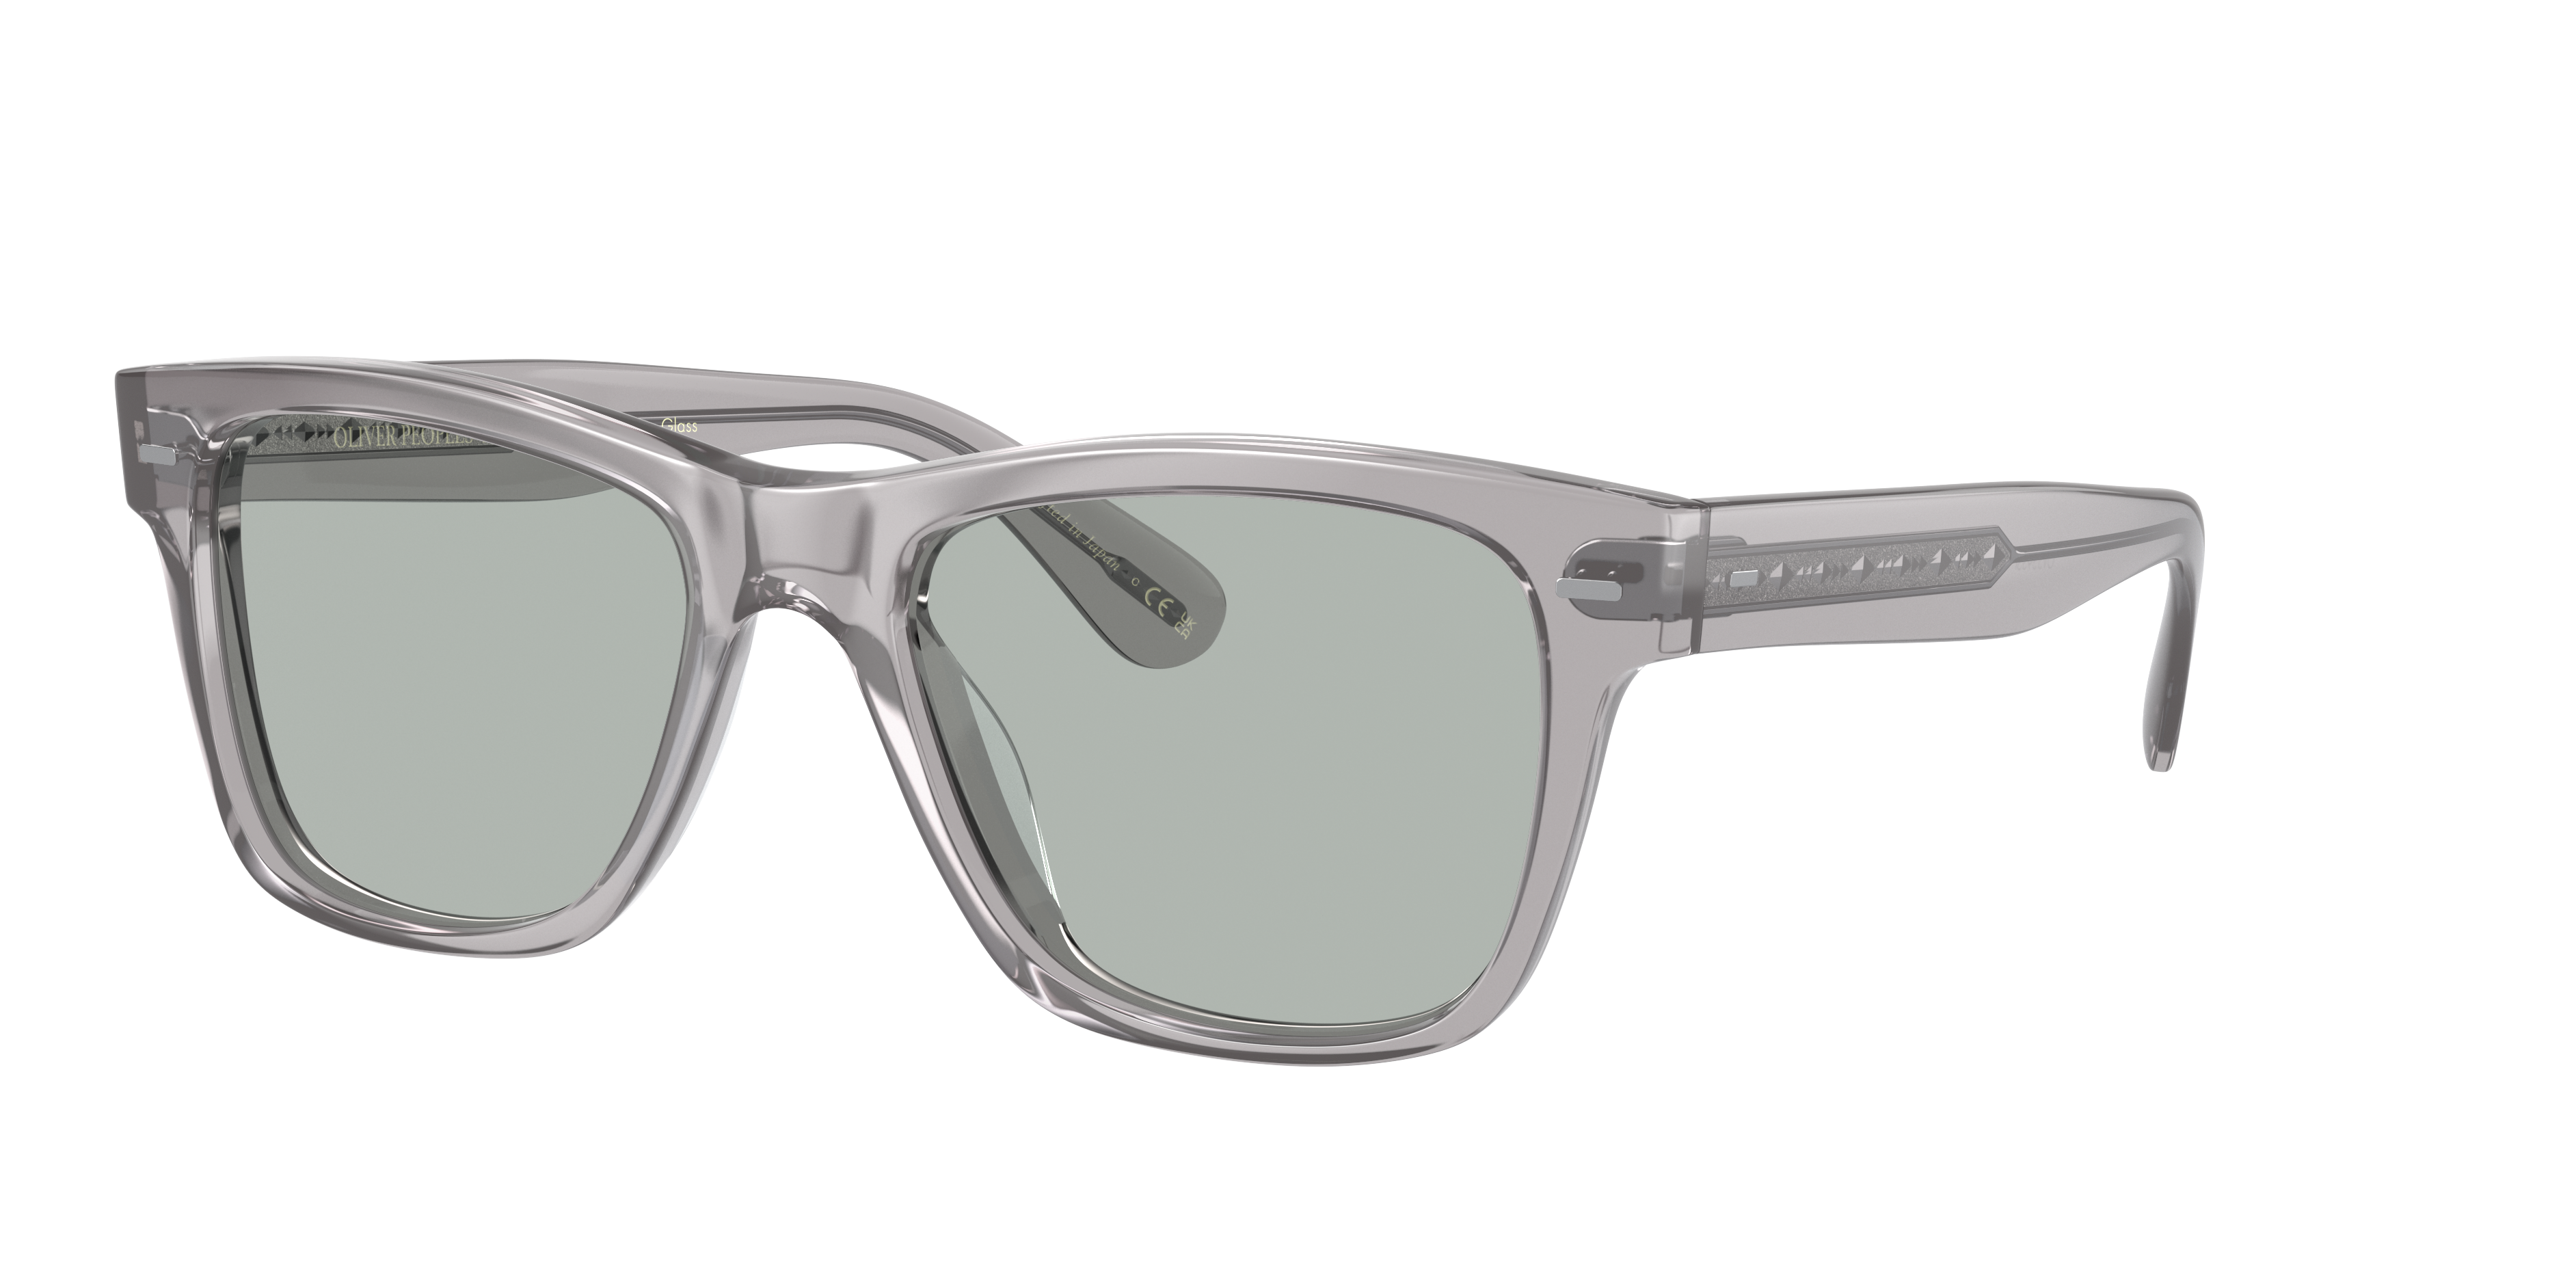 Sunglasses OV5393SF - Workman Grey - Grey Wash - アセテート ...